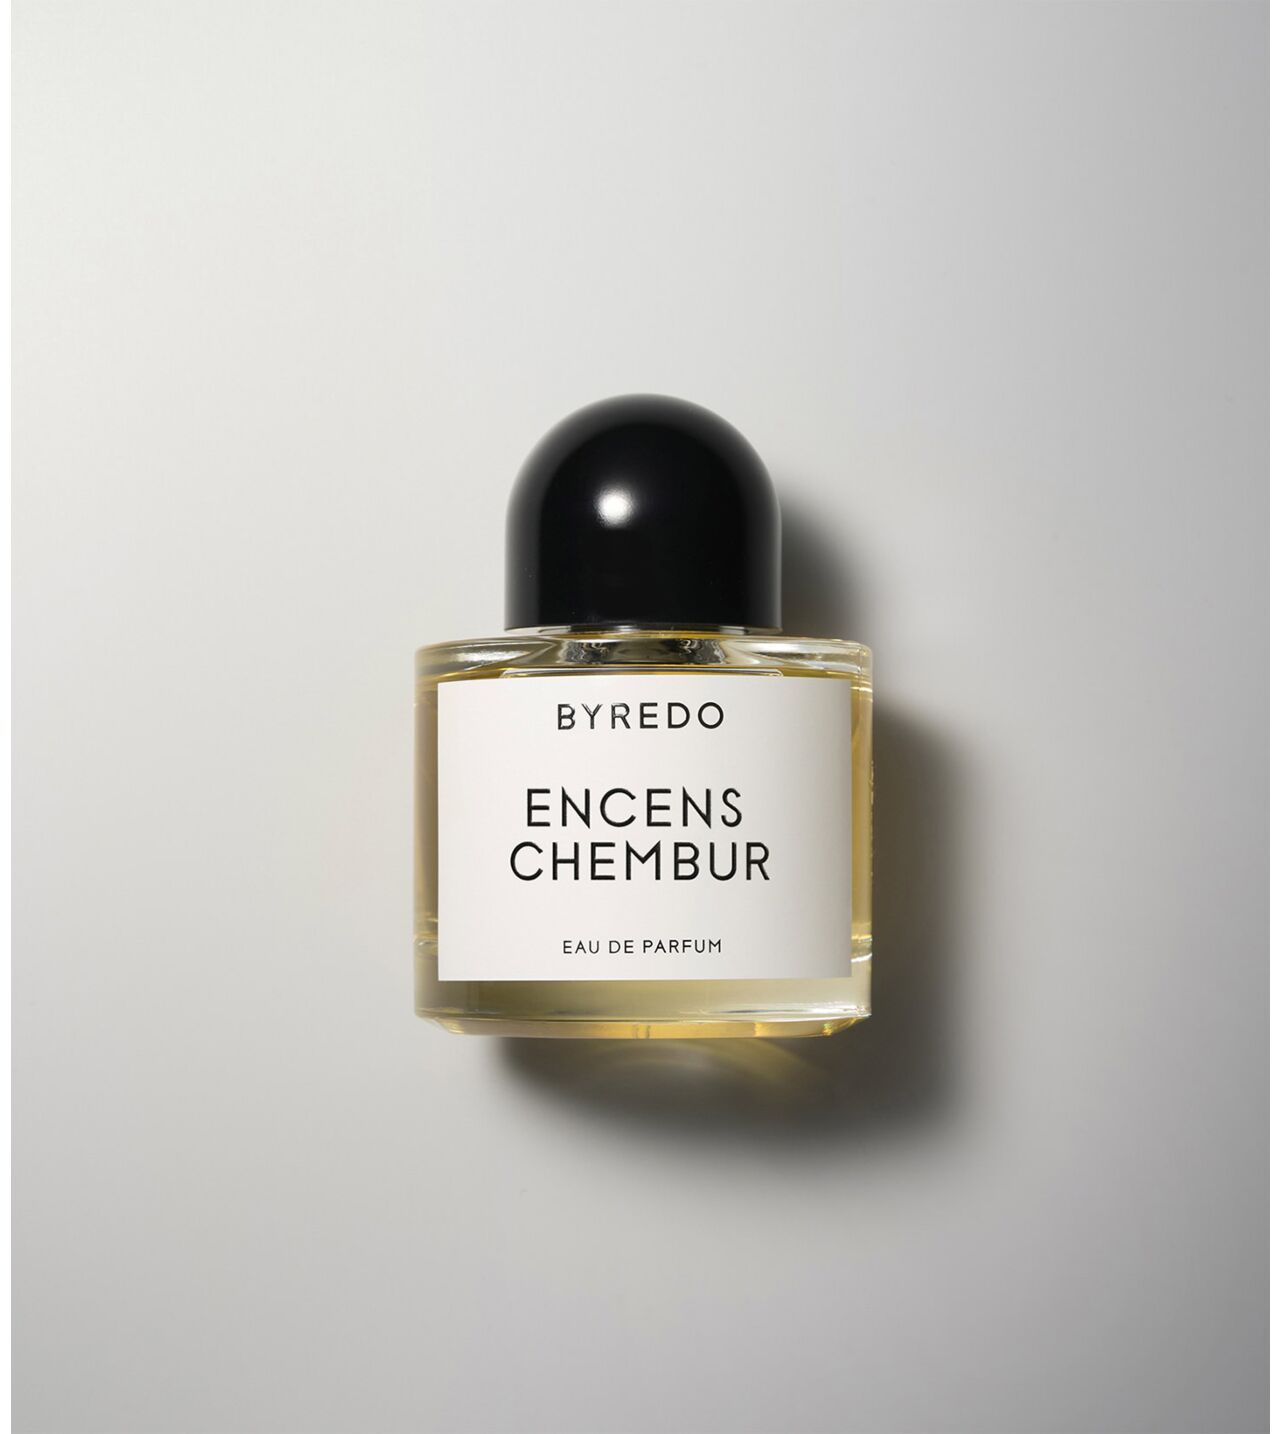 Picture of Byredo encens chembur Eau de Parfum